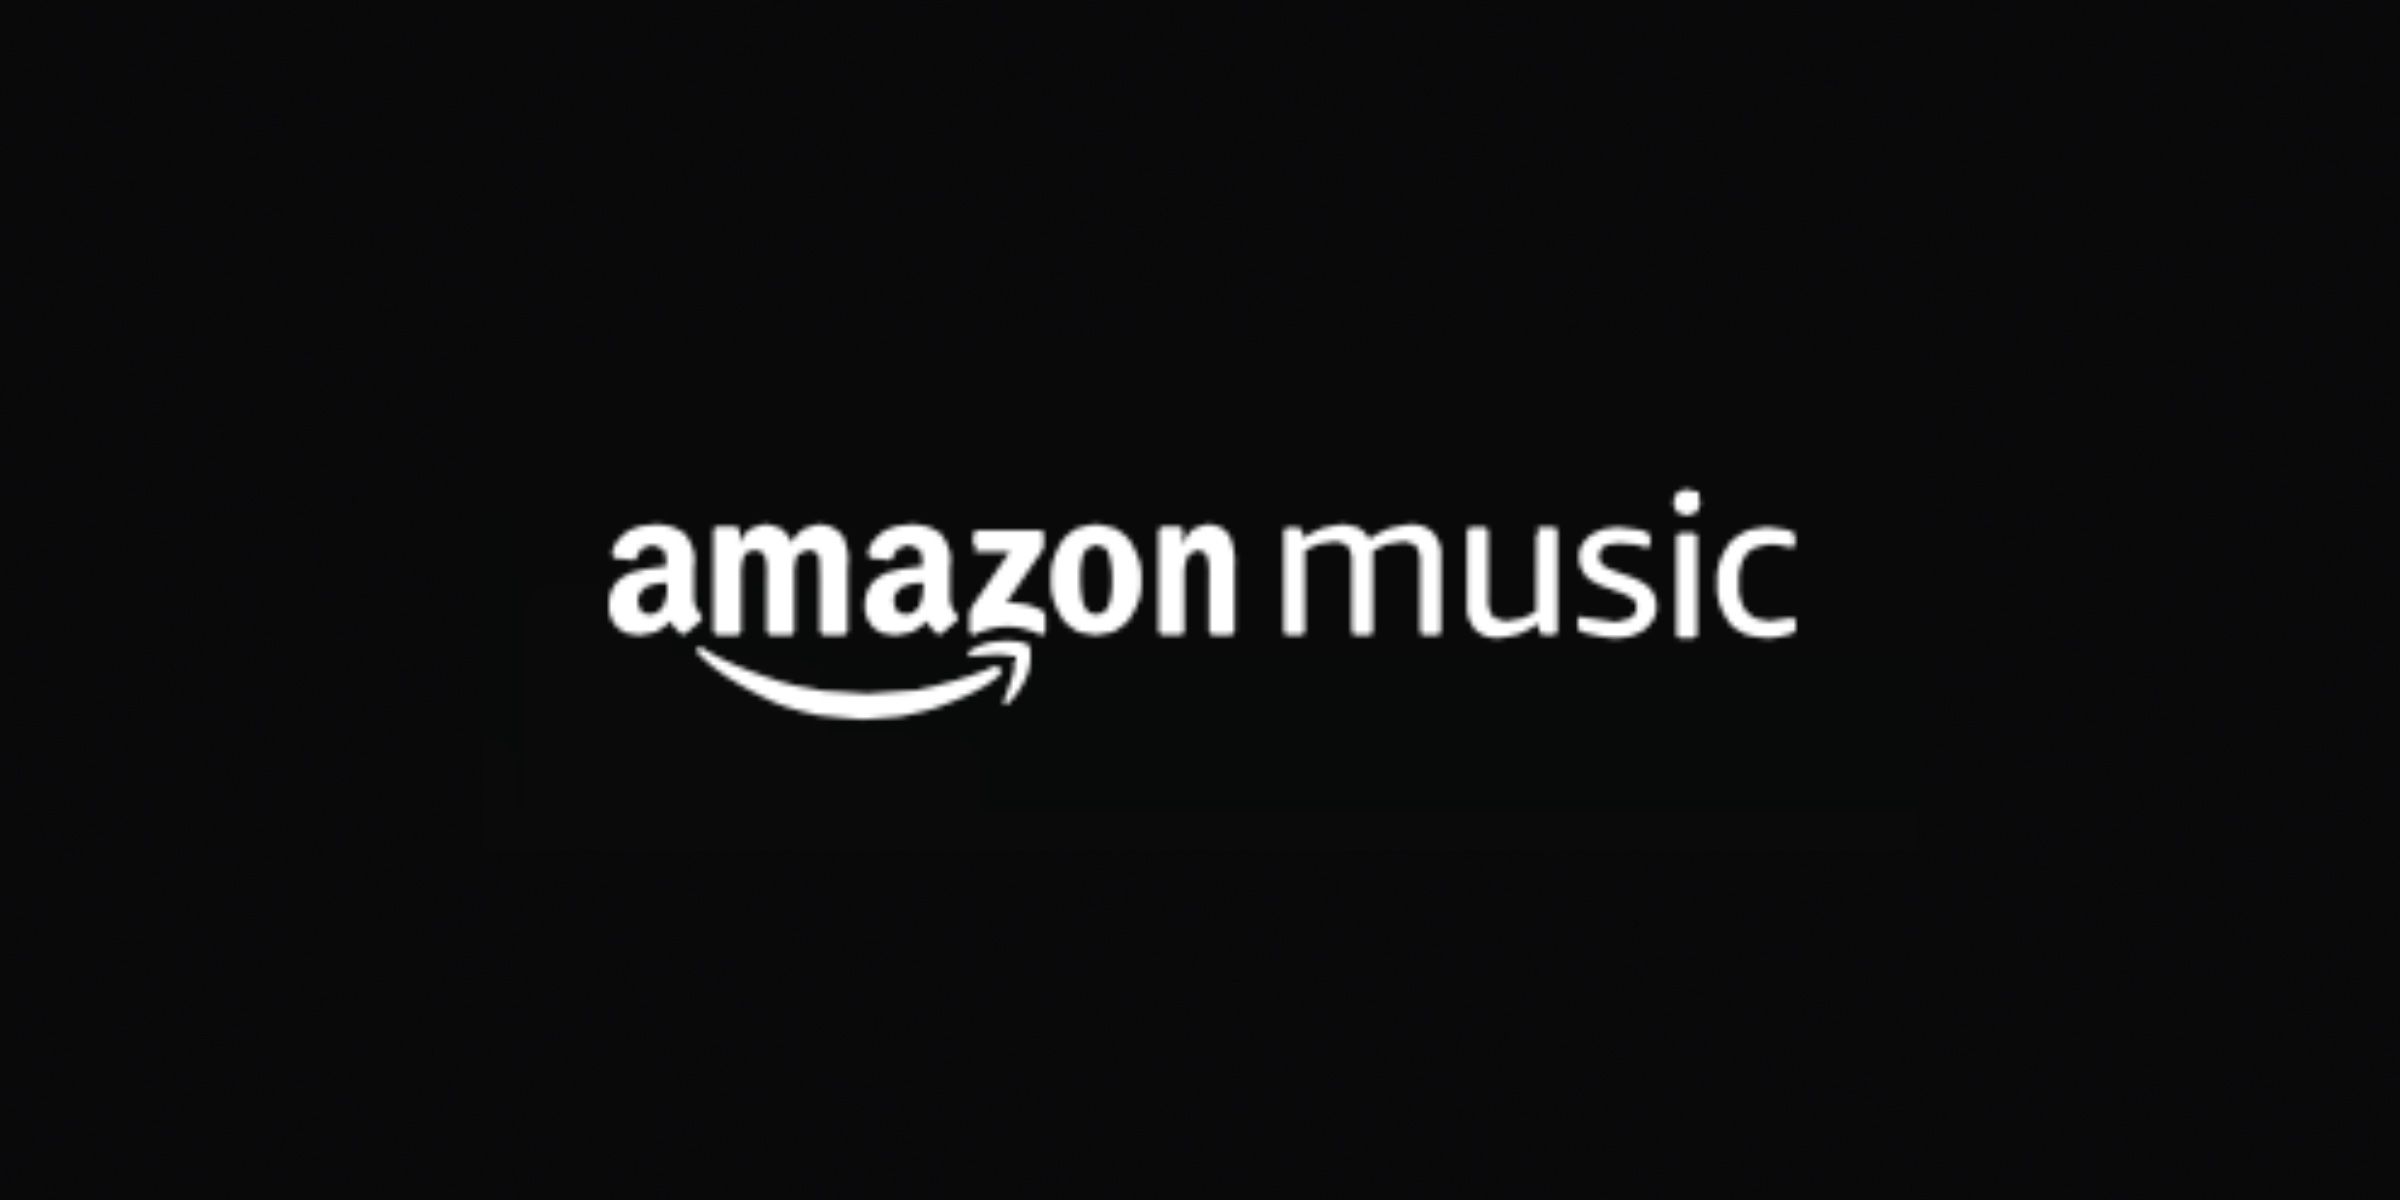 Los planes ilimitados de Amazon Music ahora son más caros en EE. UU.